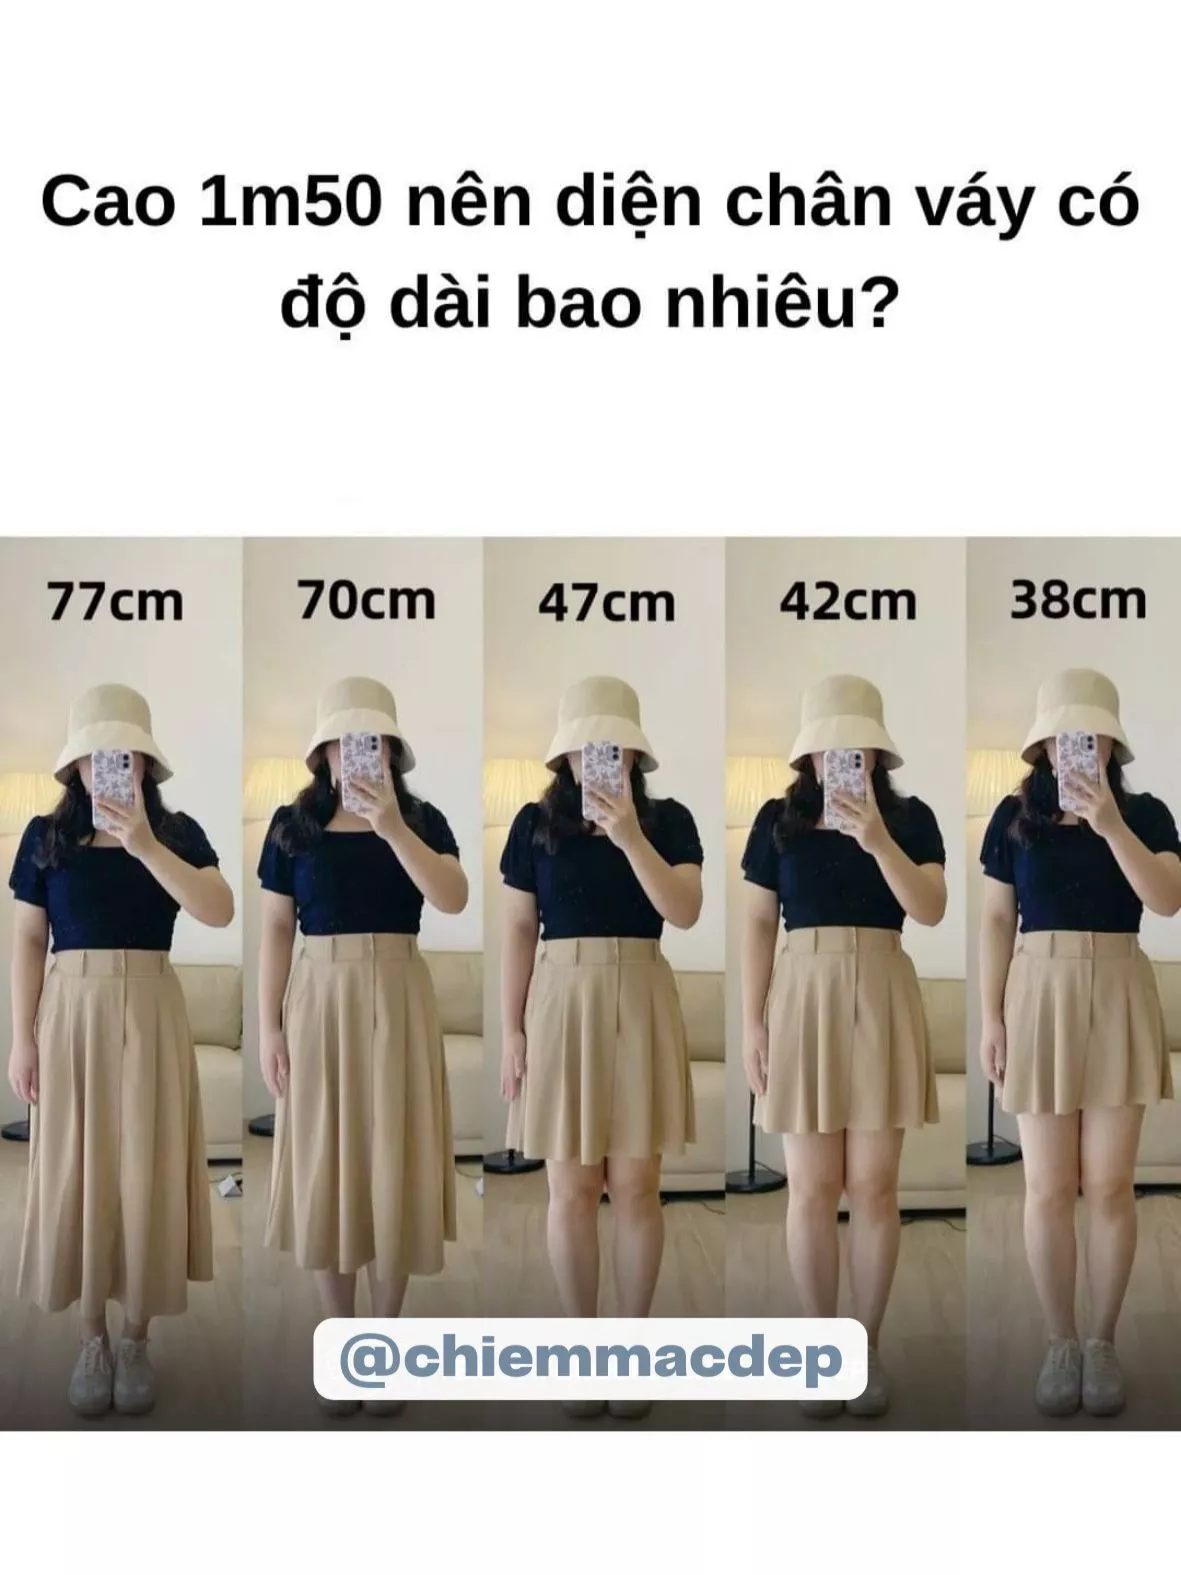 Chân Váy Size M Là Bao Nhiêu Kg - Bí Quyết Chọn Size Váy Hoàn Hảo